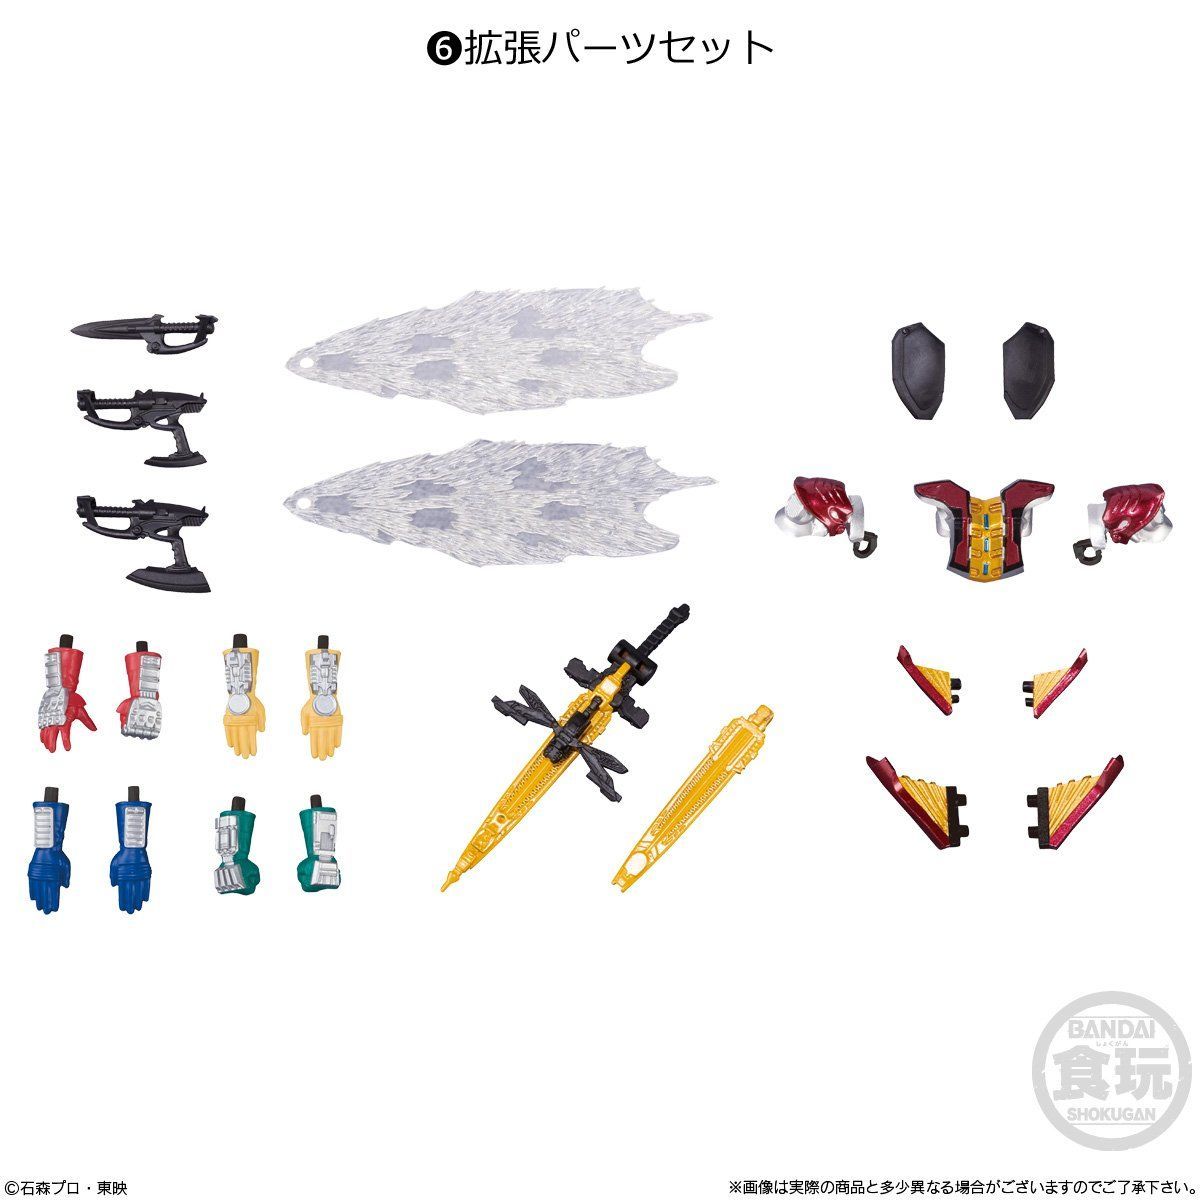 【食玩】SHODO-X『仮面ライダー10』可動フィギュア 10個入りBOX-006